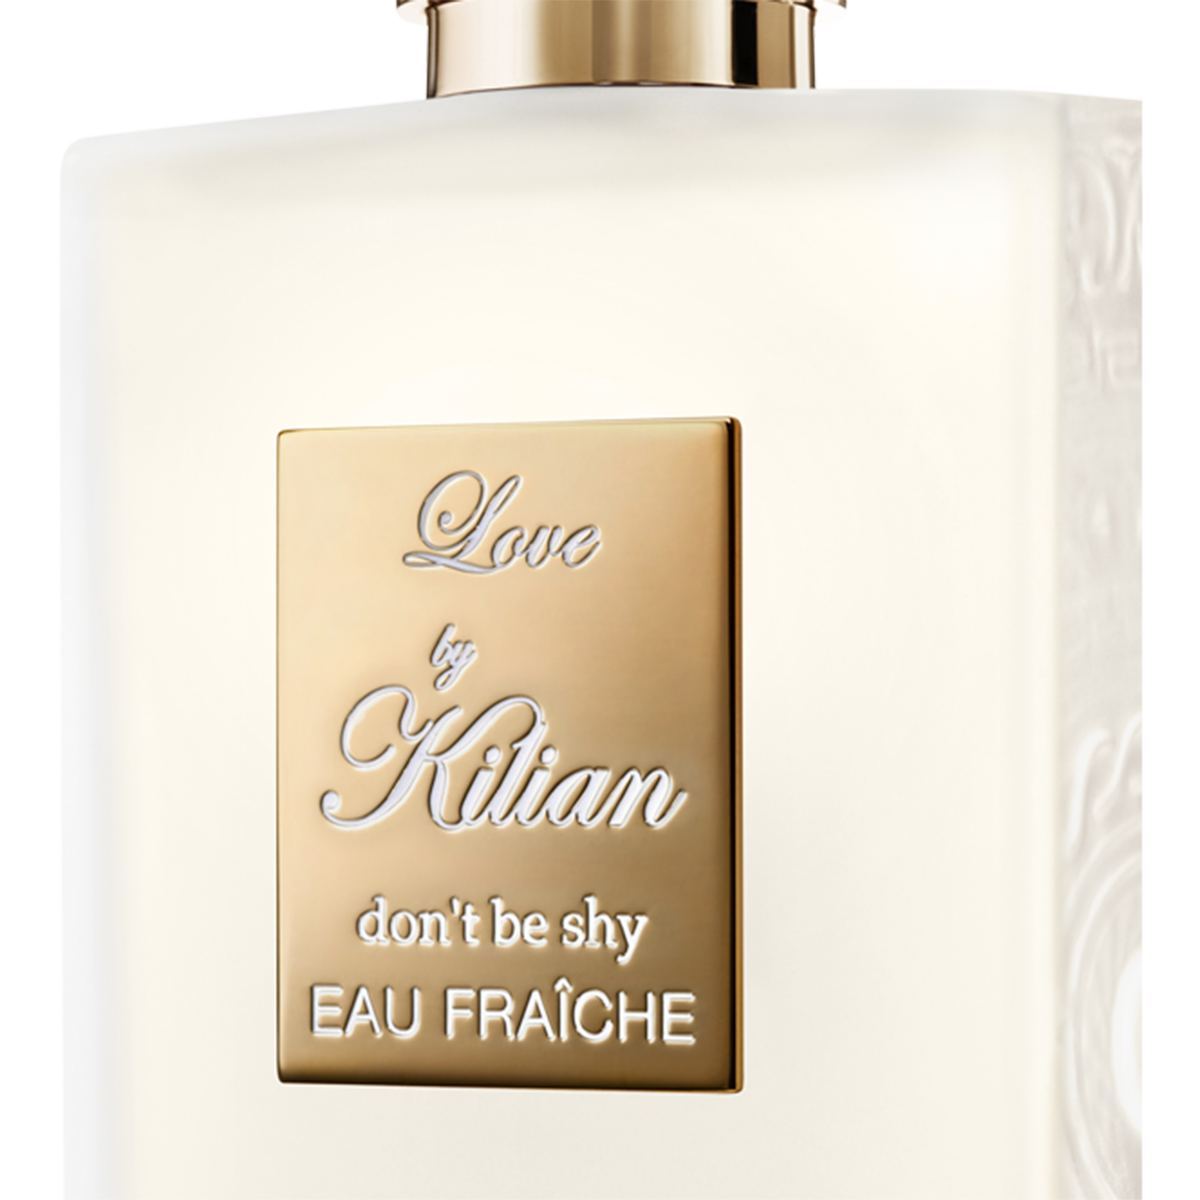 Kilian Paris - Love don't be shy eau Fraiche